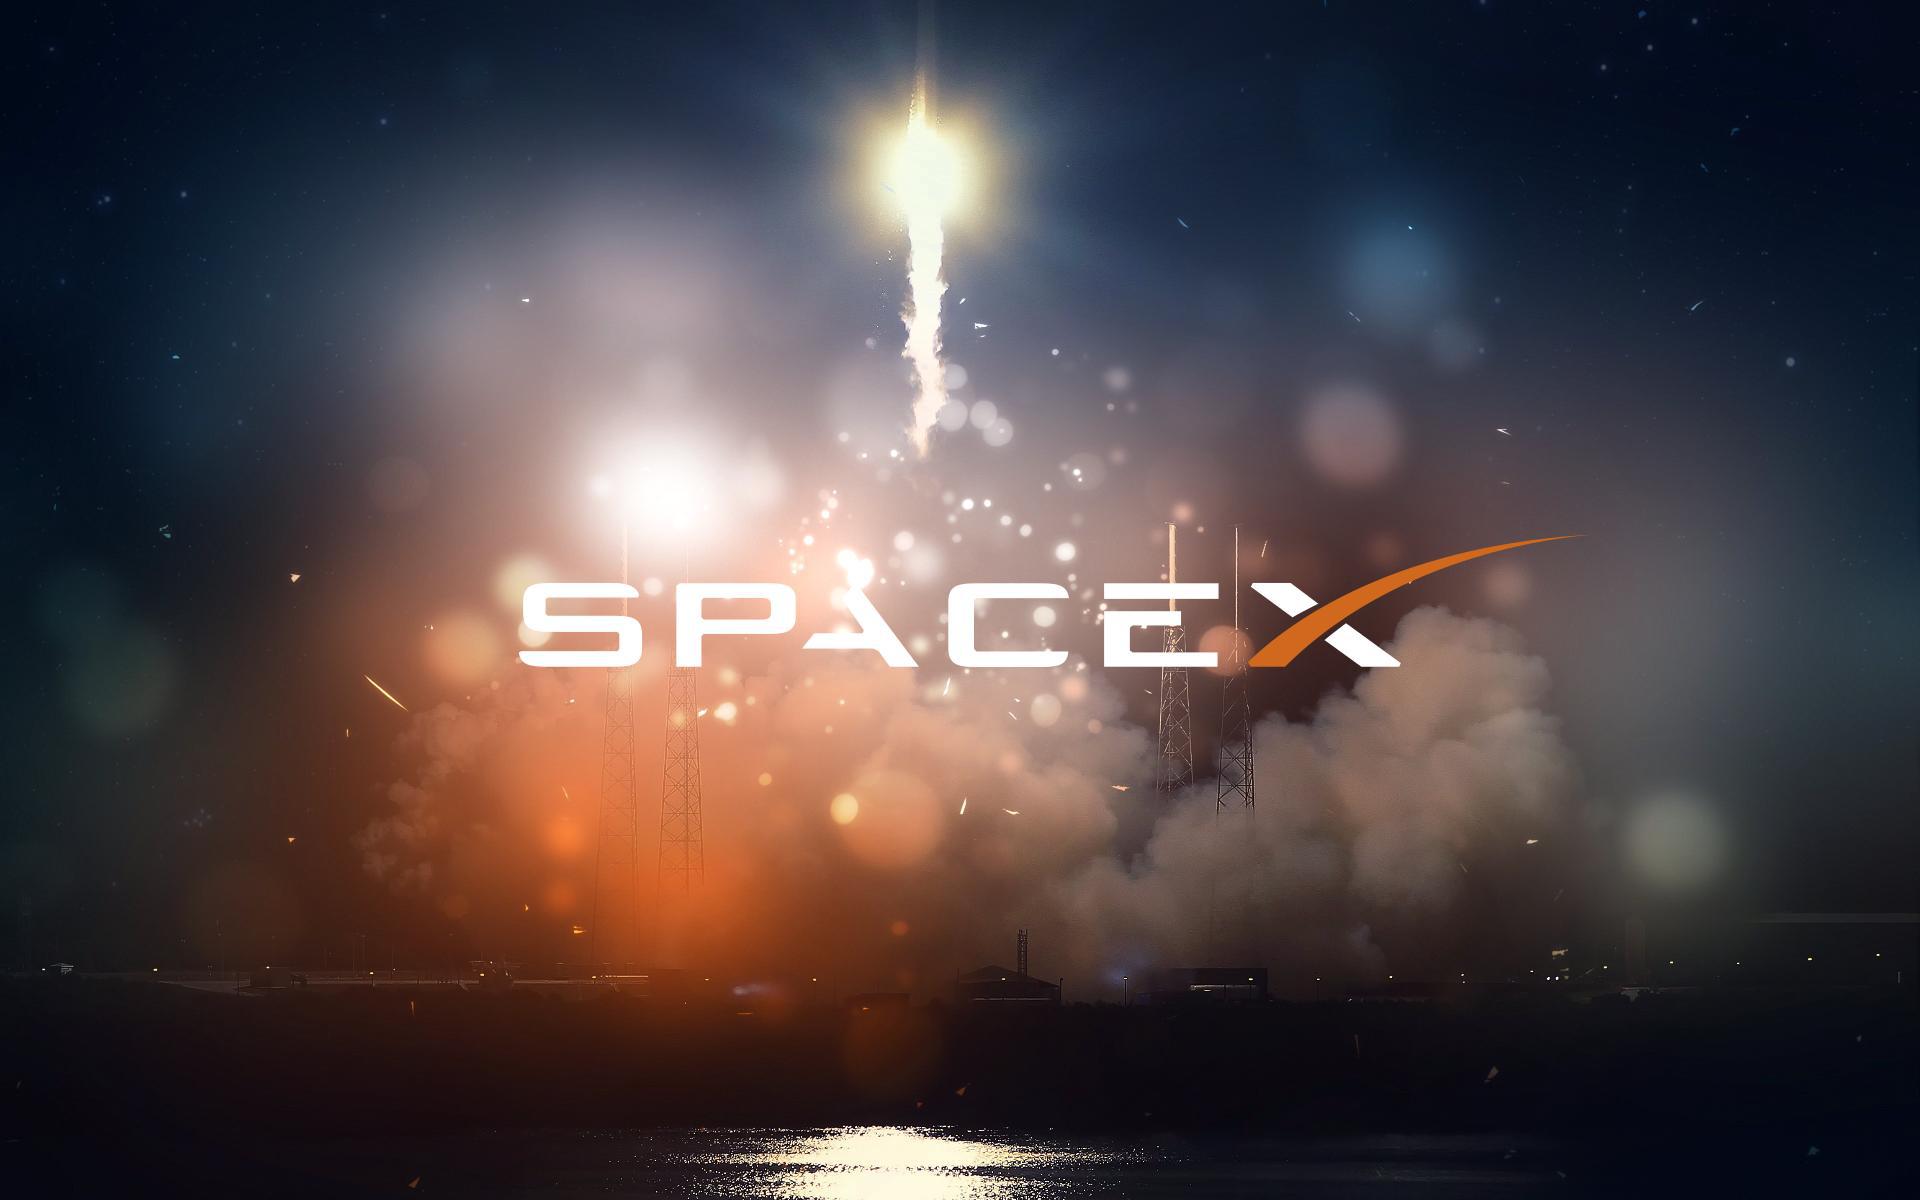 Hình nền SpaceX là những tác phẩm nghệ thuật đầy ấn tượng mà bạn không thể bỏ qua. Những hình ảnh tuyệt đẹp với chi tiết chính xác sẽ đưa bạn vào không gian không giới hạn. Hãy cùng chiêm ngưỡng những bức tranh tuyệt đẹp này và trải nghiệm cảm giác phiêu lưu trong không gian như một phi hành gia chuyên nghiệp.